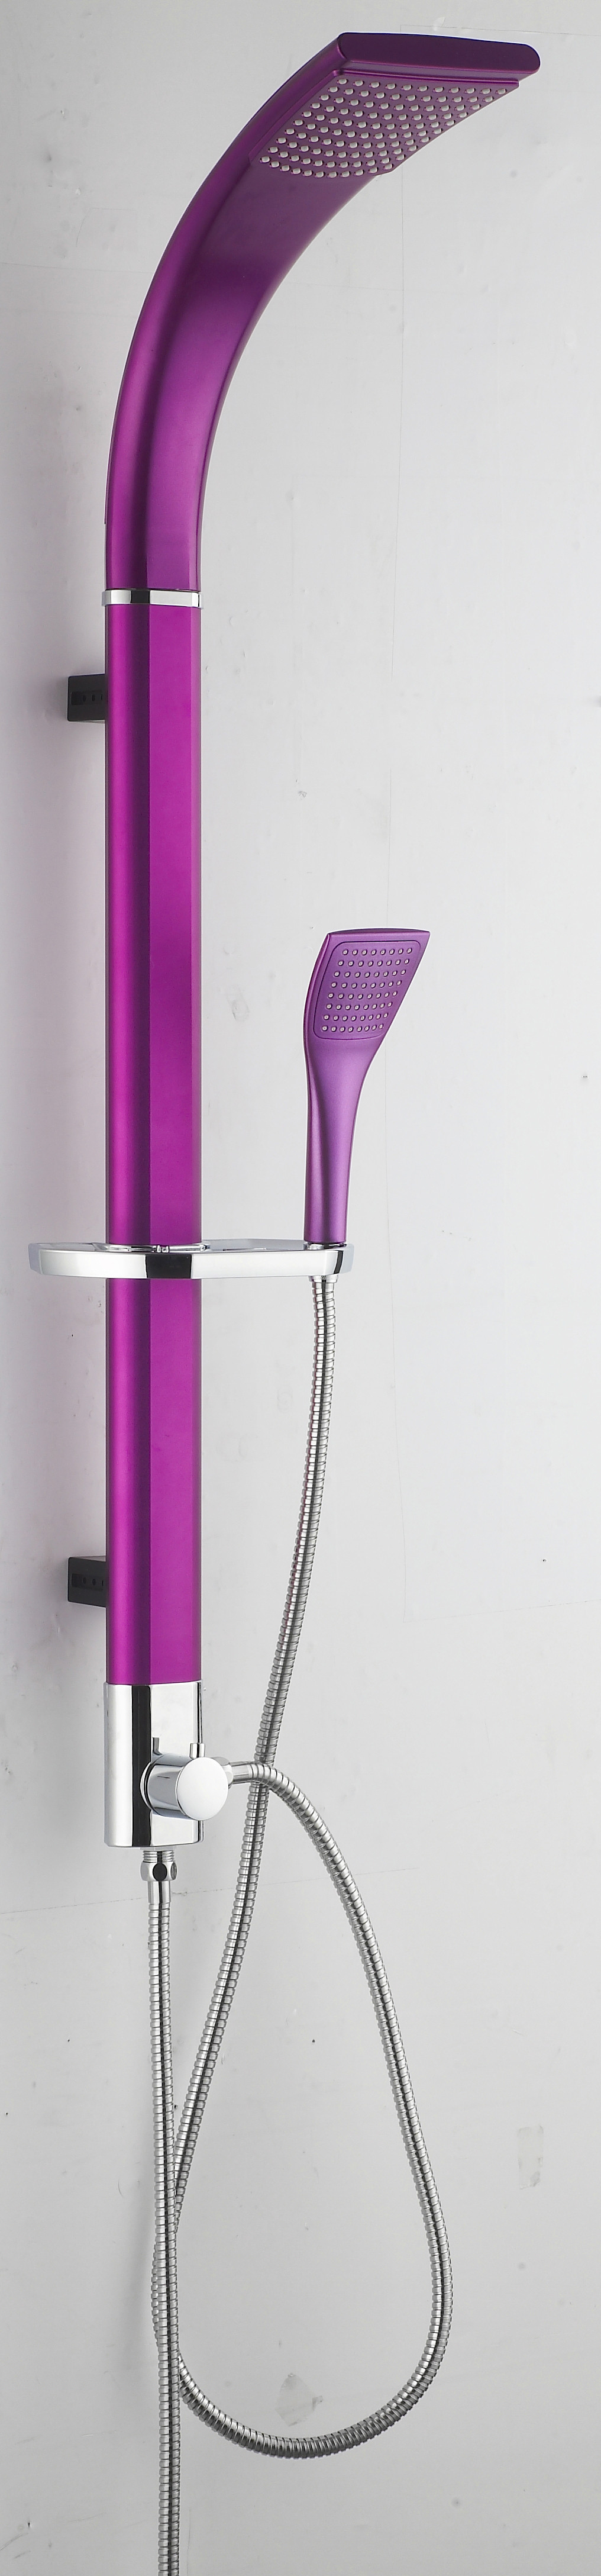 Buy cheap color shower set( purple color )JK-8881 product